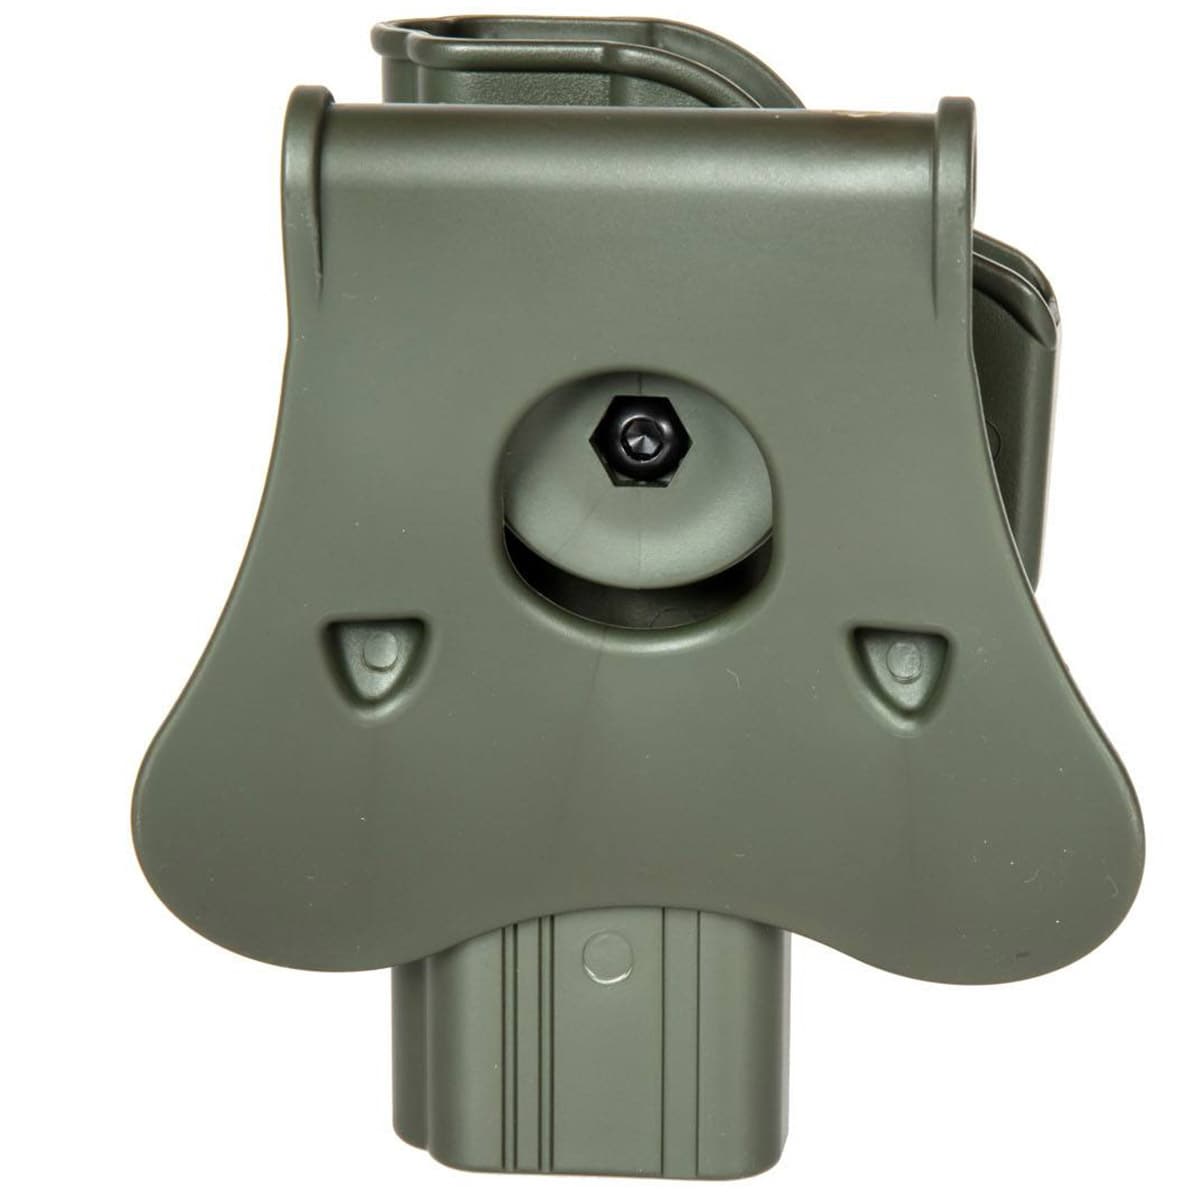 Kabura Amomax Per-Fit do replik typu Glock 17/22/31 - Oliwkowa